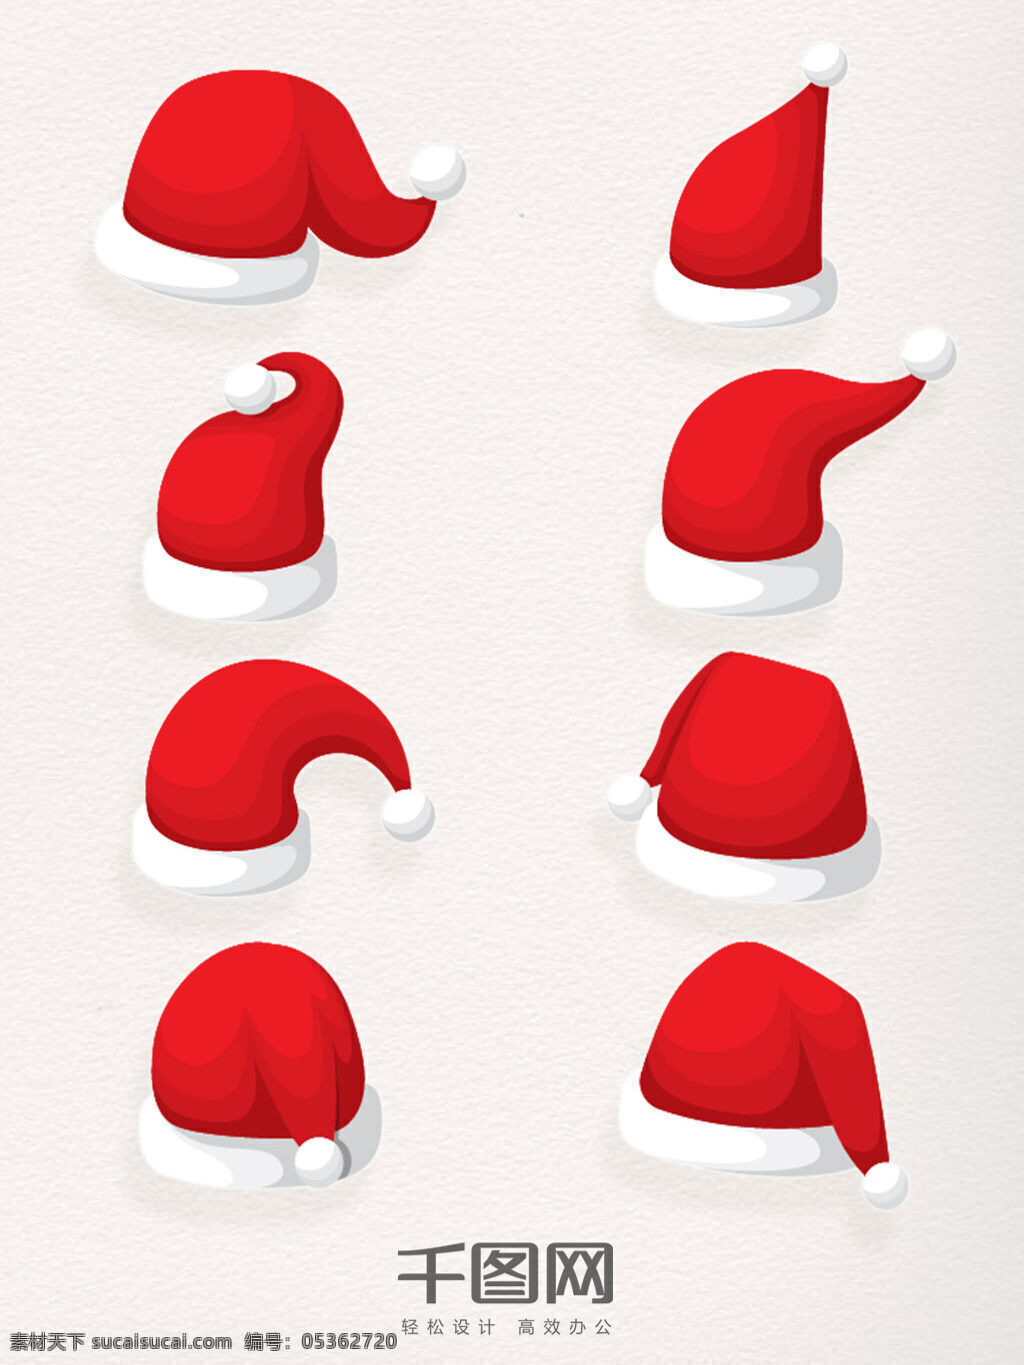 组 圣诞节 超 萌 q 版 圣诞 帽 元素 节日 手绘 圣诞帽子 圣诞老人 快乐 庆祝